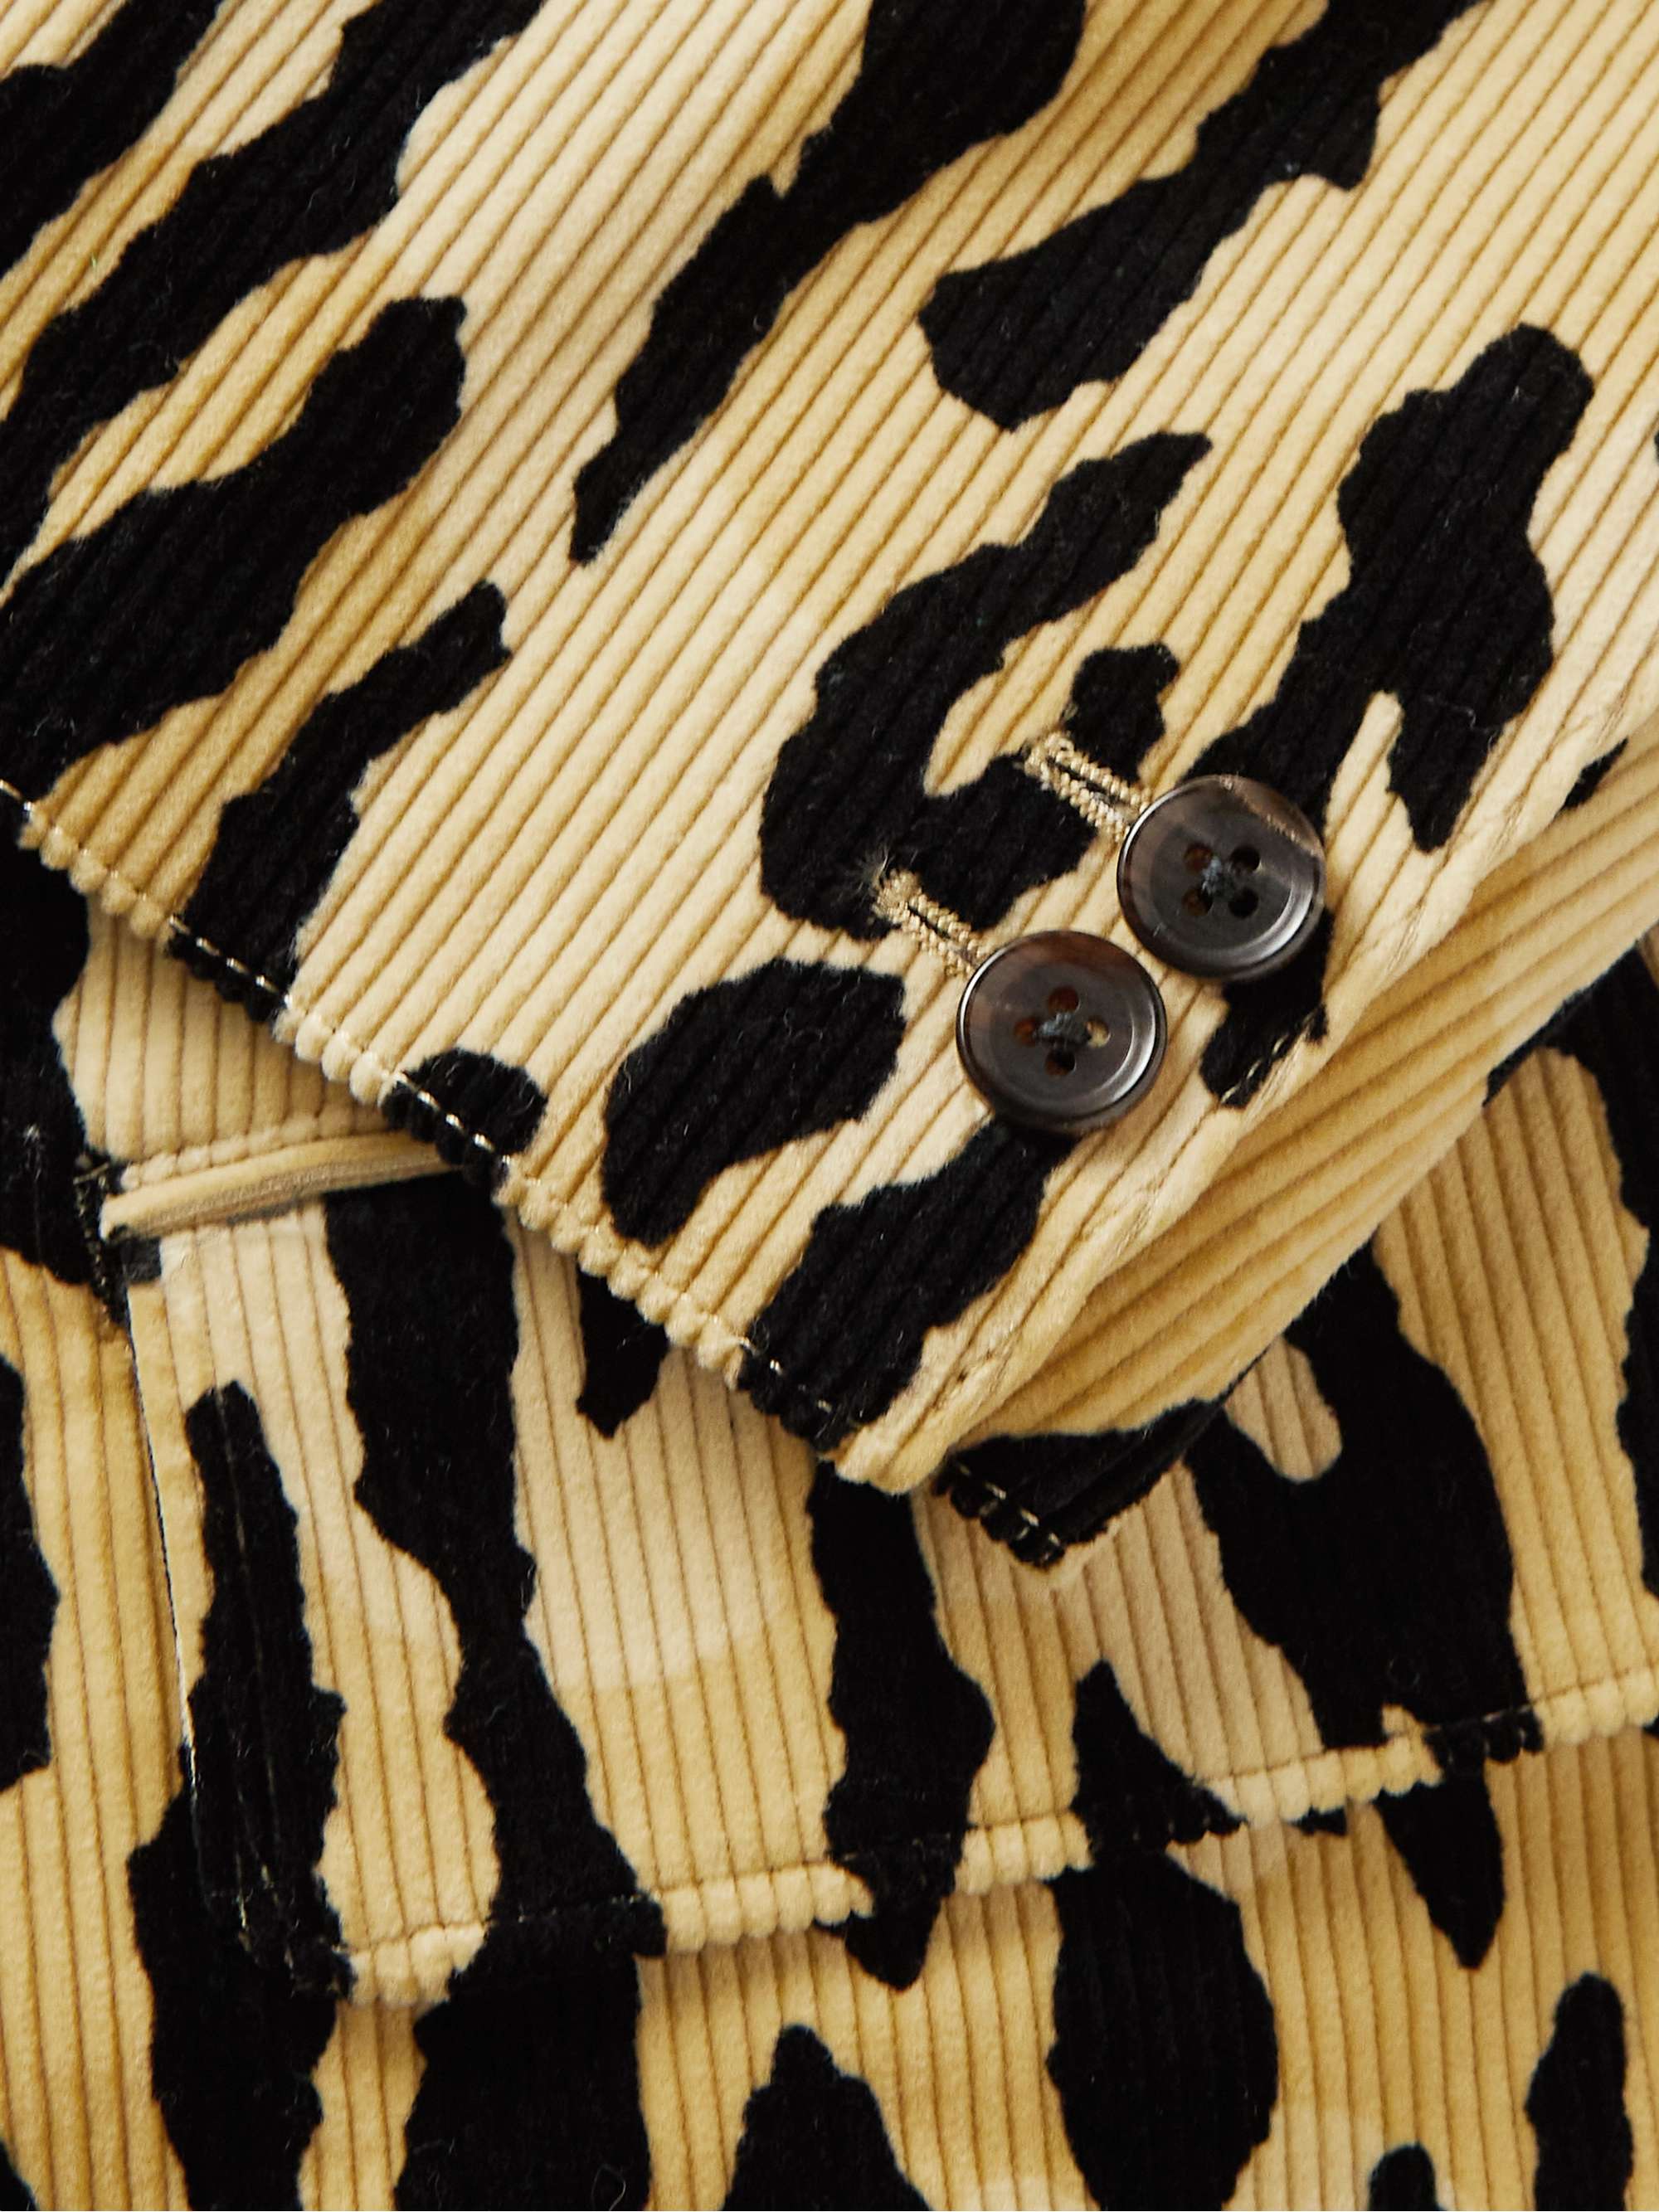 WACKO MARIA Unstructured Leopard-Print Cotton-Corduroy Suit Jacket